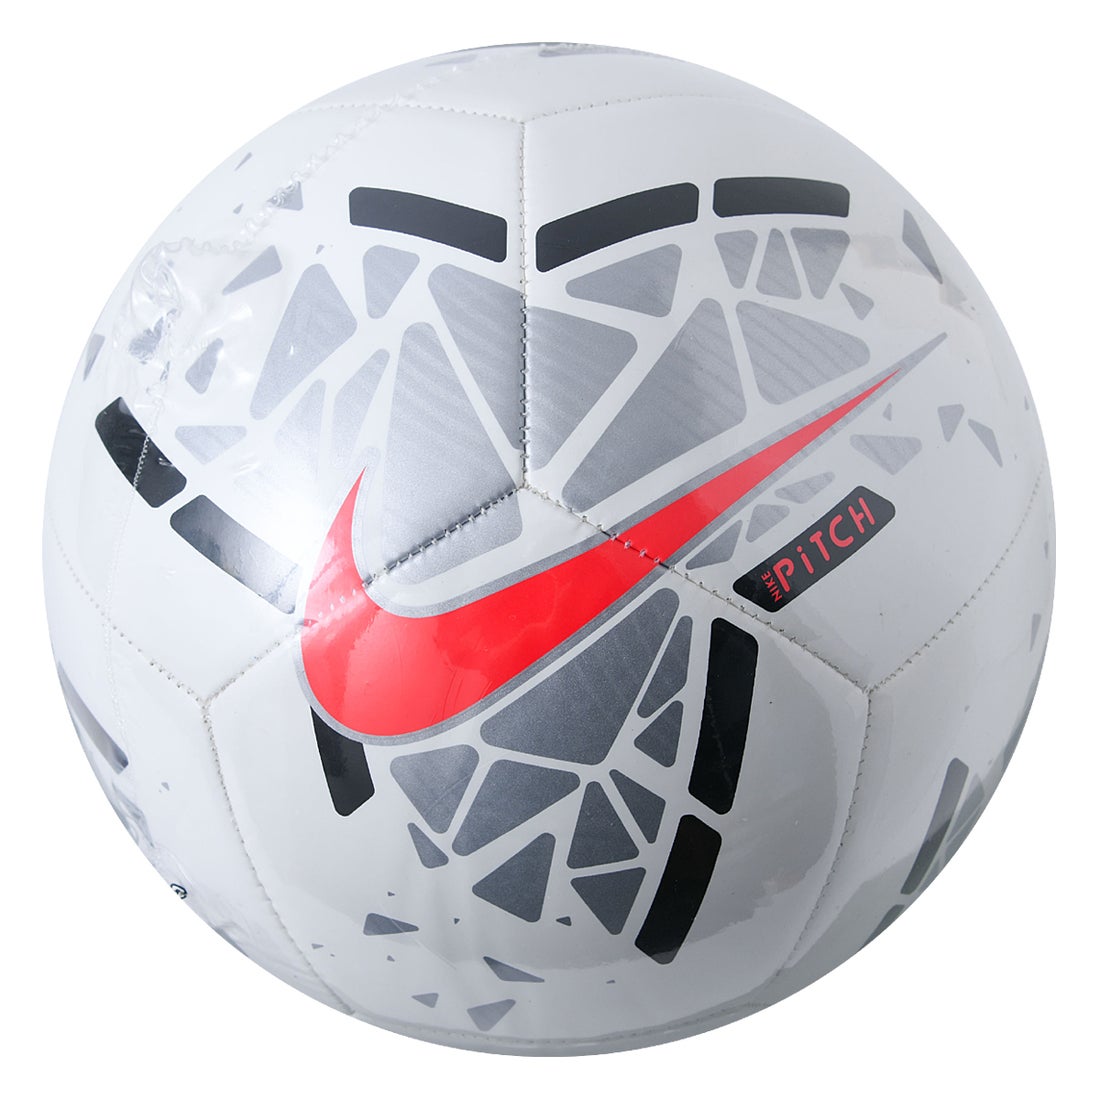 Nike ナイキ ピッチ 4号球 ホワイト シルバー Sc3807 103 4 サッカー ボール サッカーショップ Sws